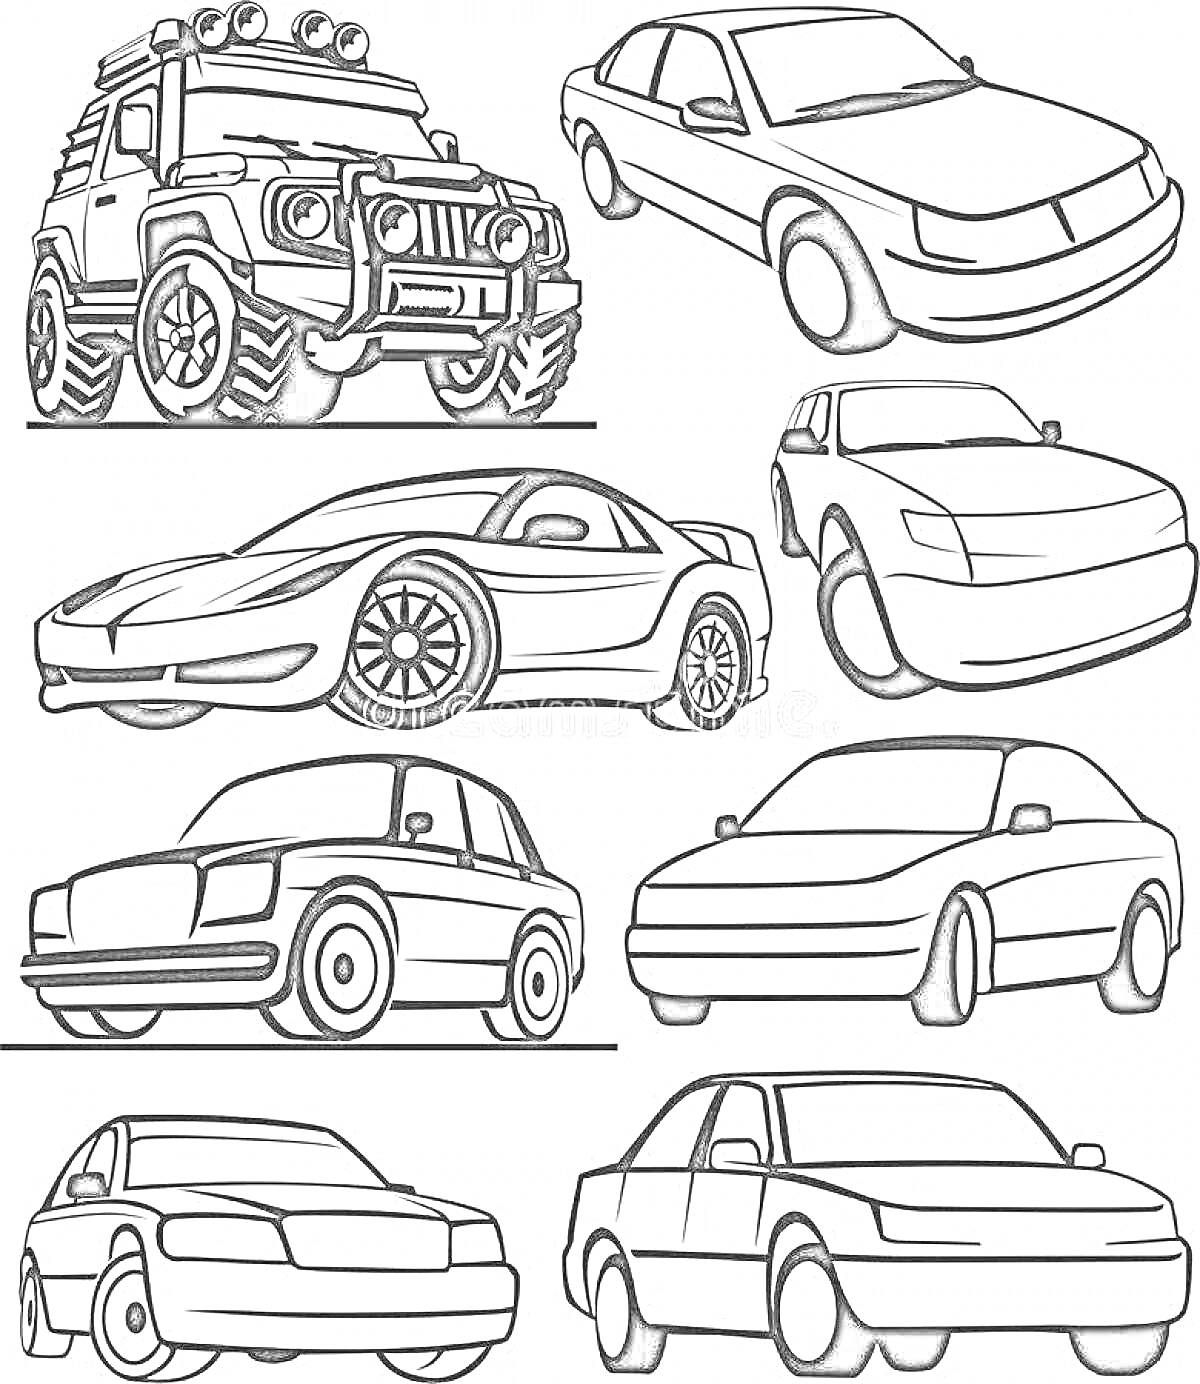 Раскраска Разные автомобили: внедорожник с фарами, седан, спортивный автомобиль, купе и другие легковые машины